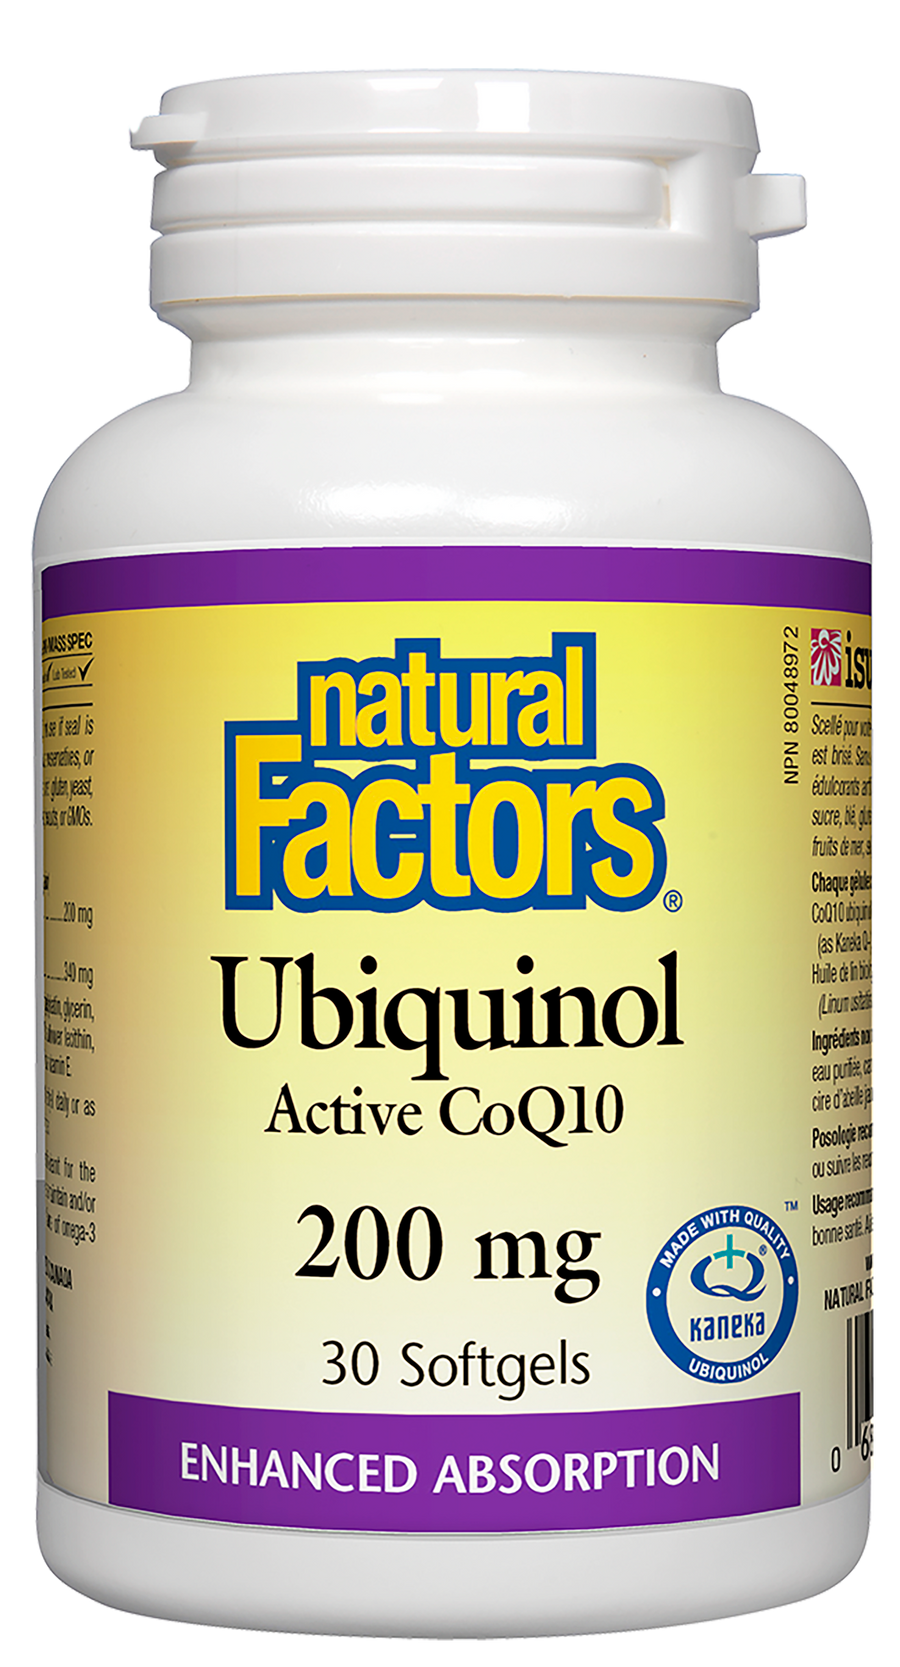 Natural Factors Ubiquinol Active CoQ10 200mg 30 Softgels